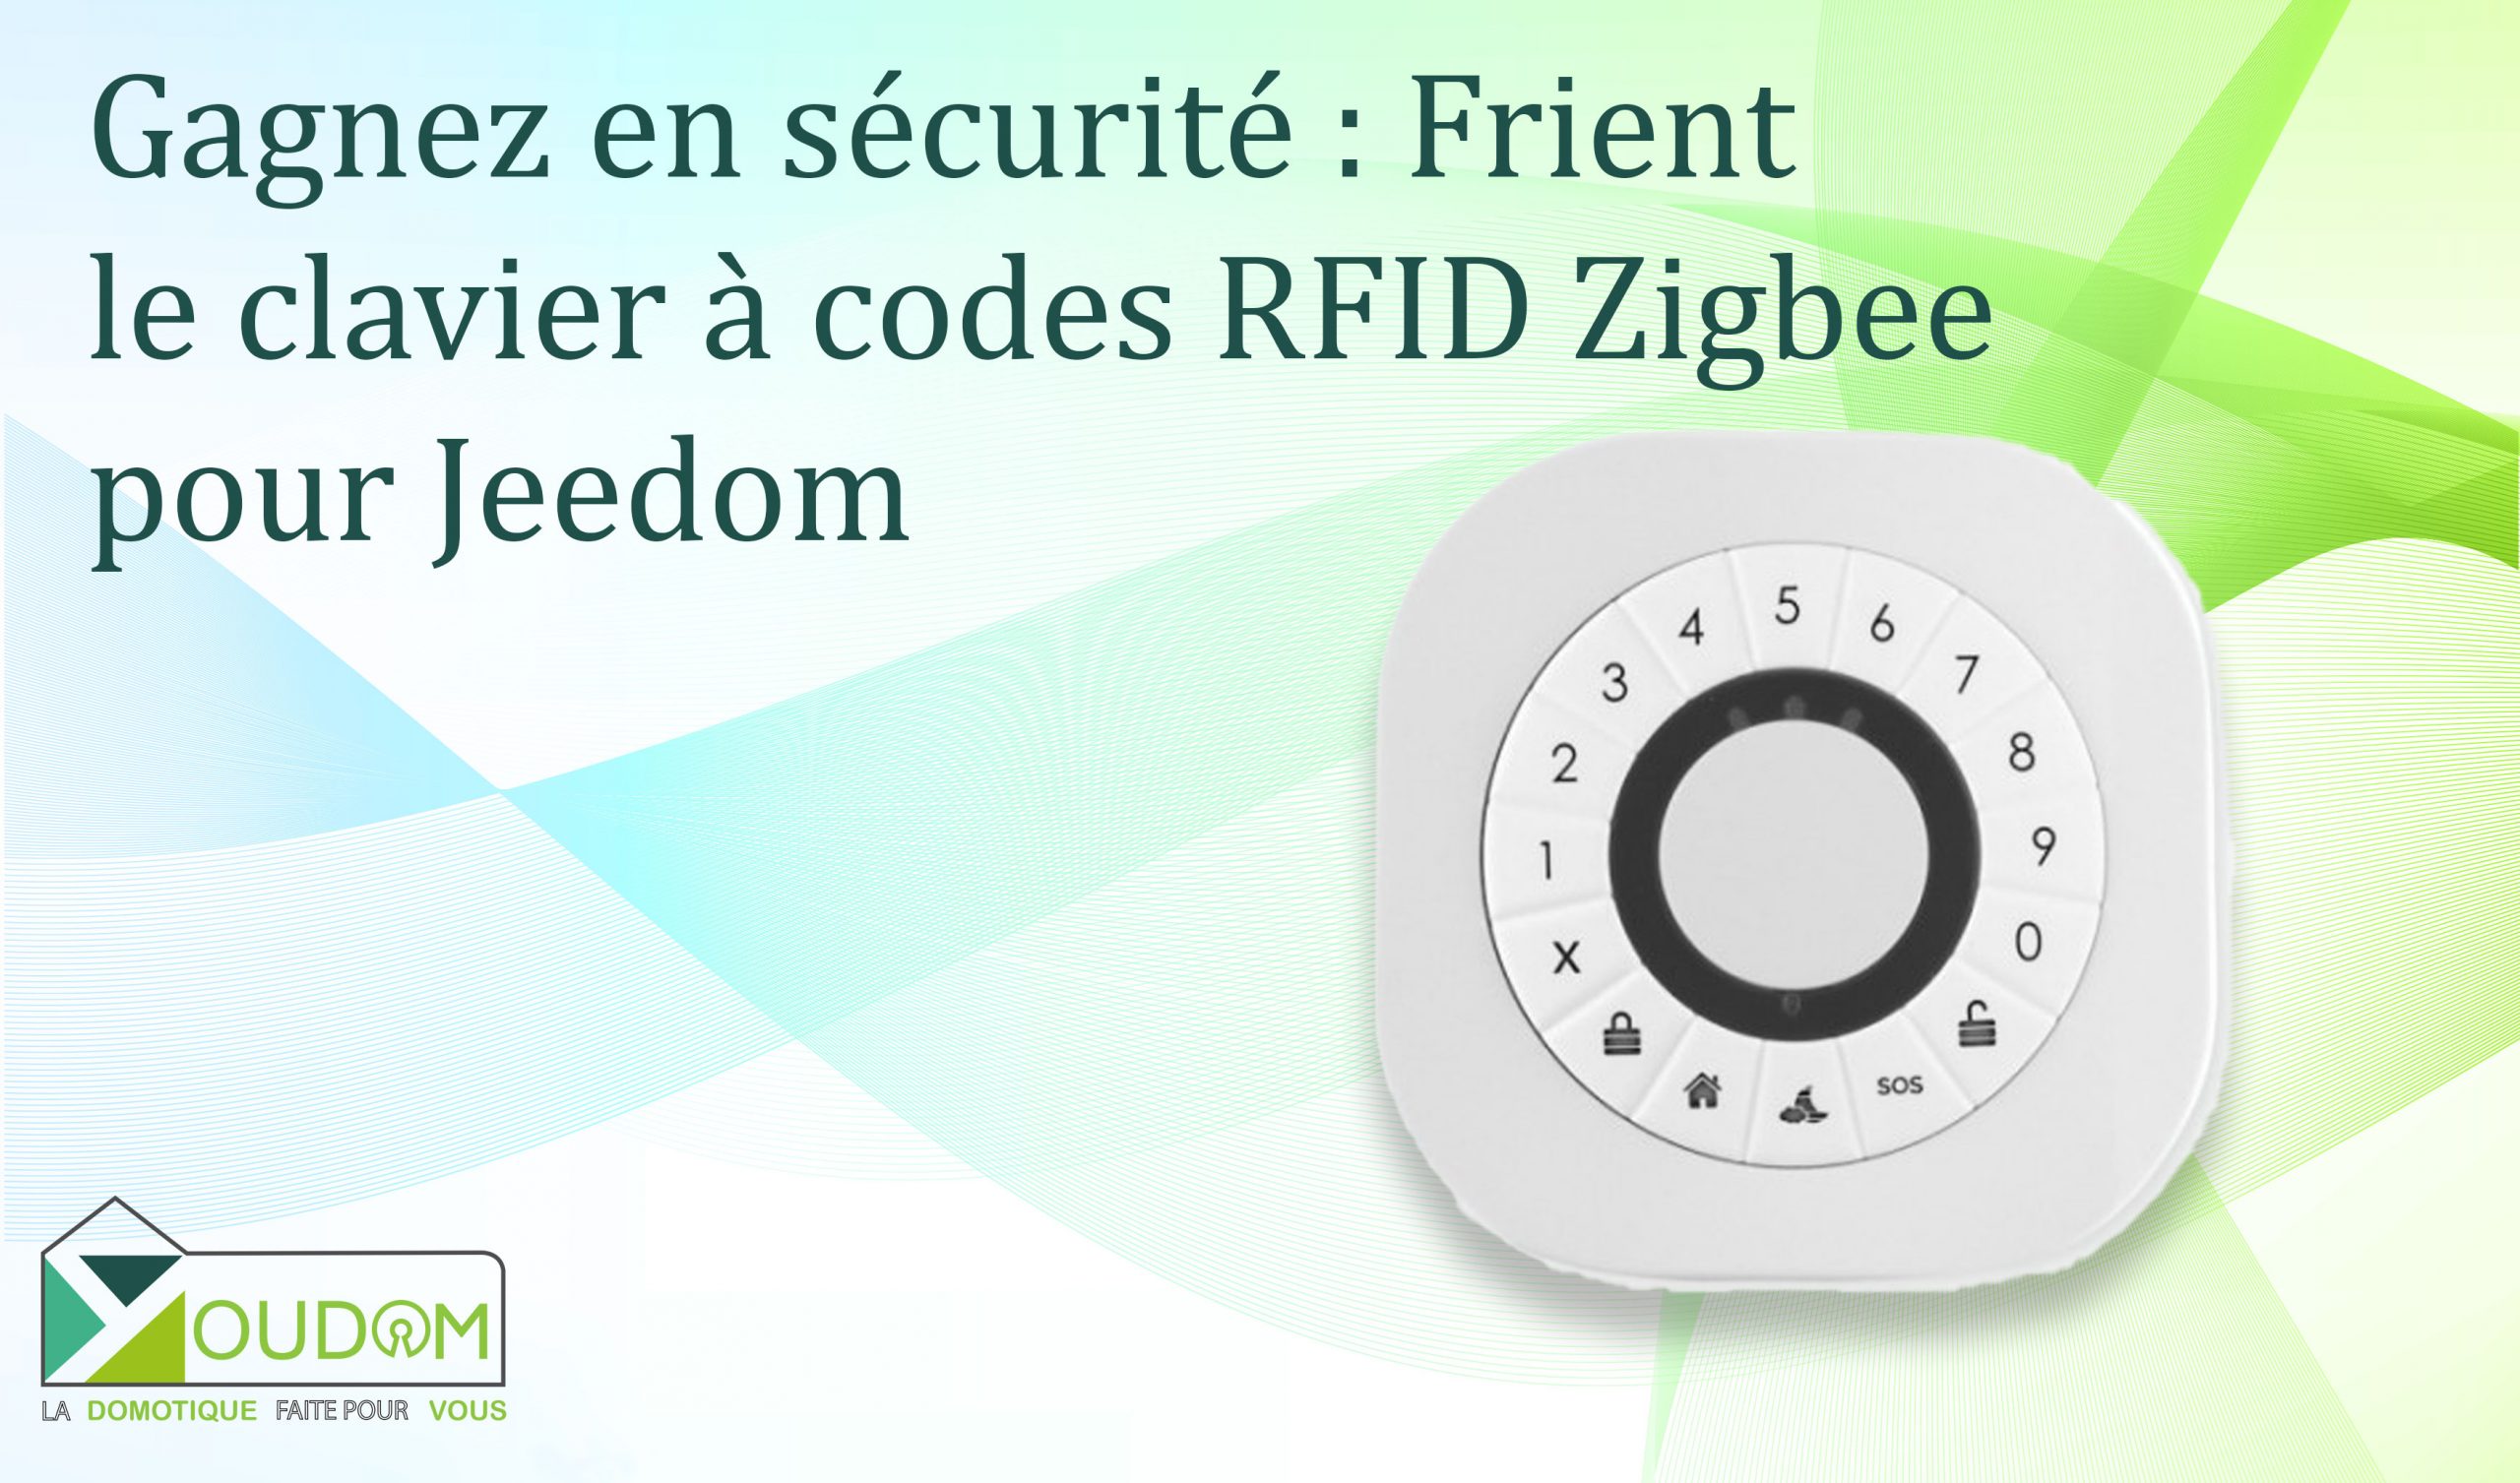 Lire la suite à propos de l’article Gagnez en sécurité : Frient le clavier à codes RFID Zigbee pour votre domotique Jeedom